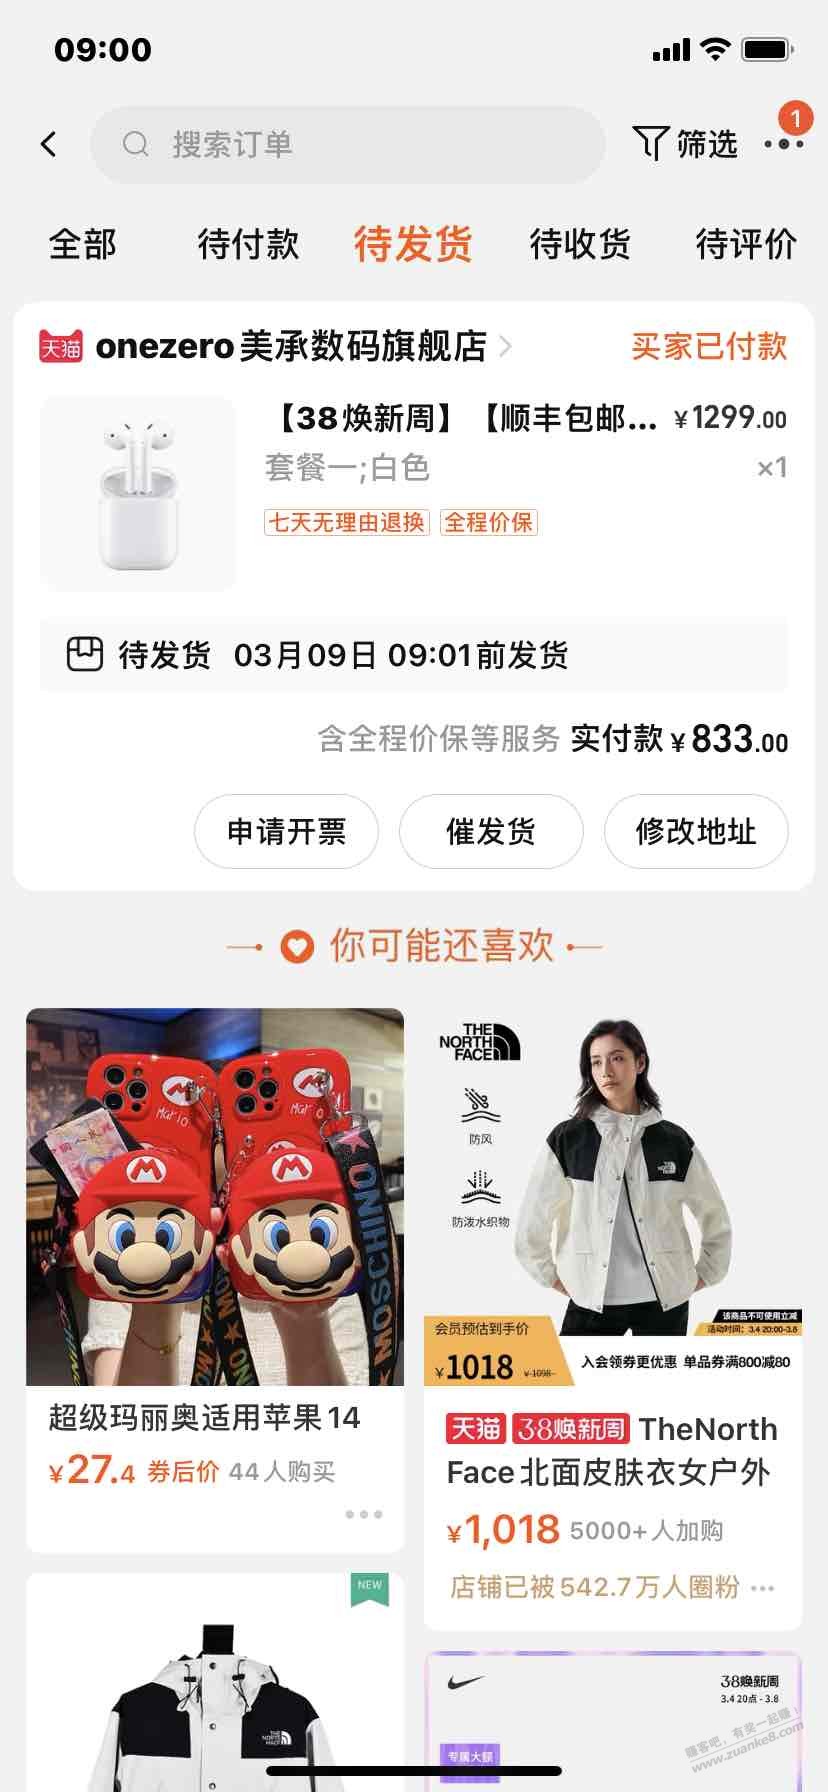 四川300-38买了苹果二代耳机-惠小助(52huixz.com)